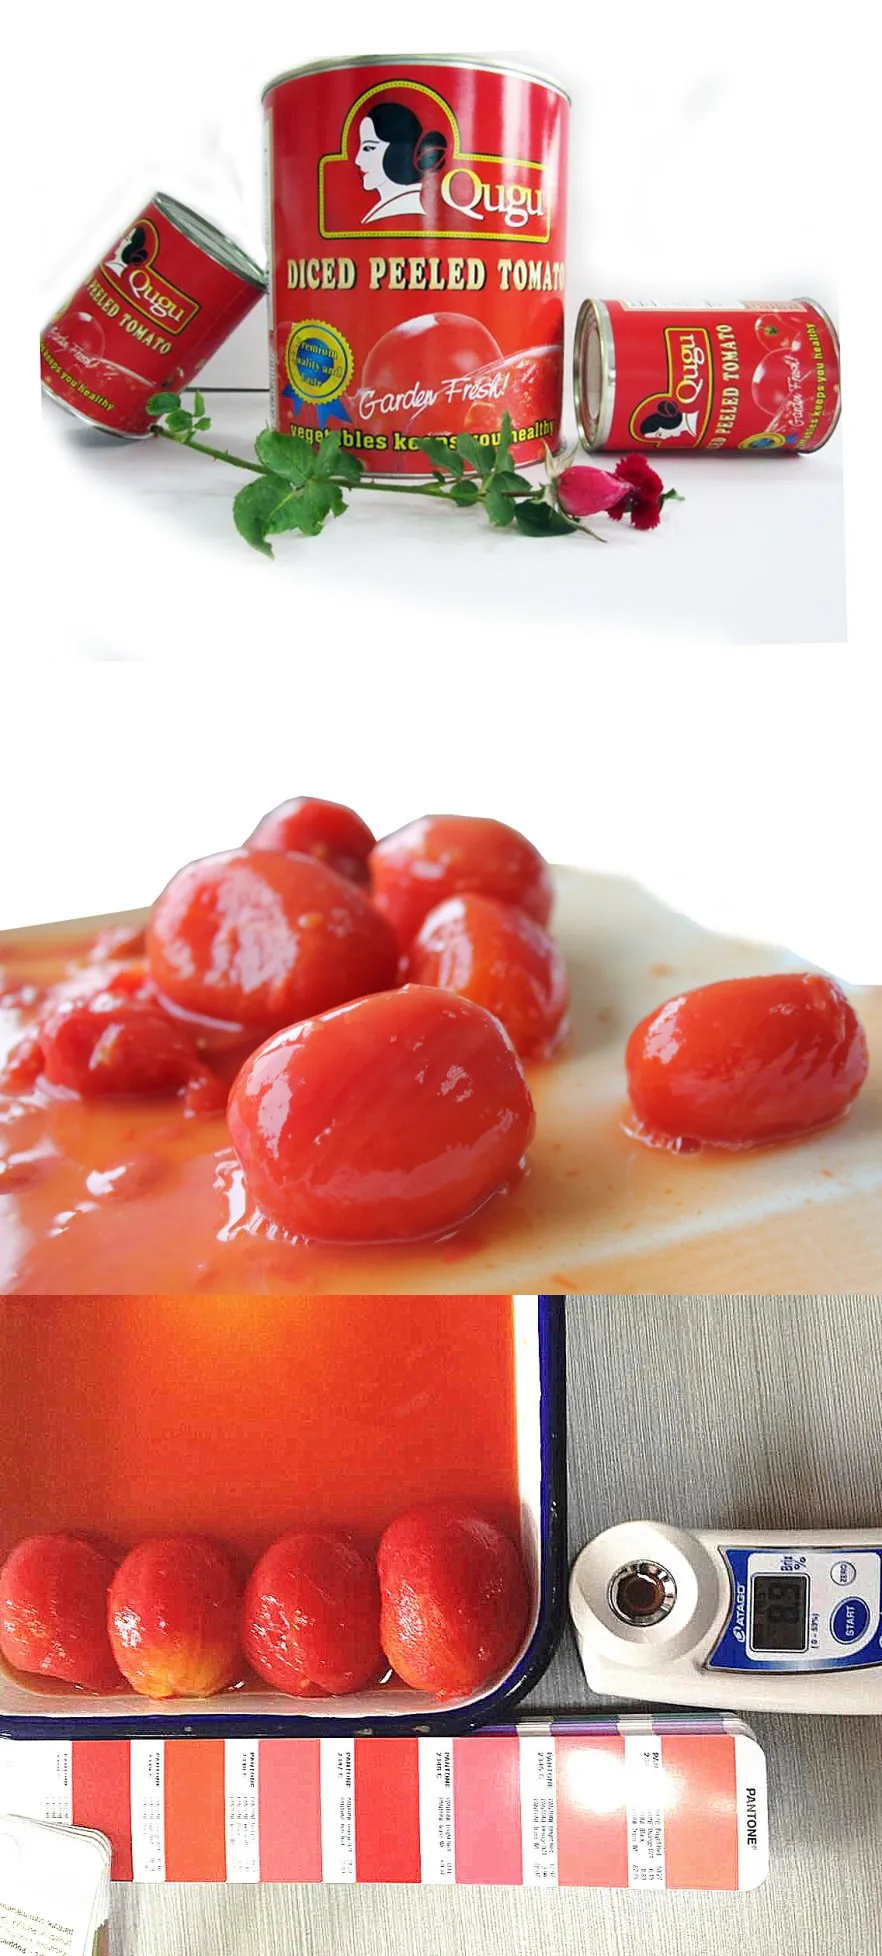 全去皮西红柿罐头 buy 全去皮番茄,去皮番茄,罐装番茄 product on